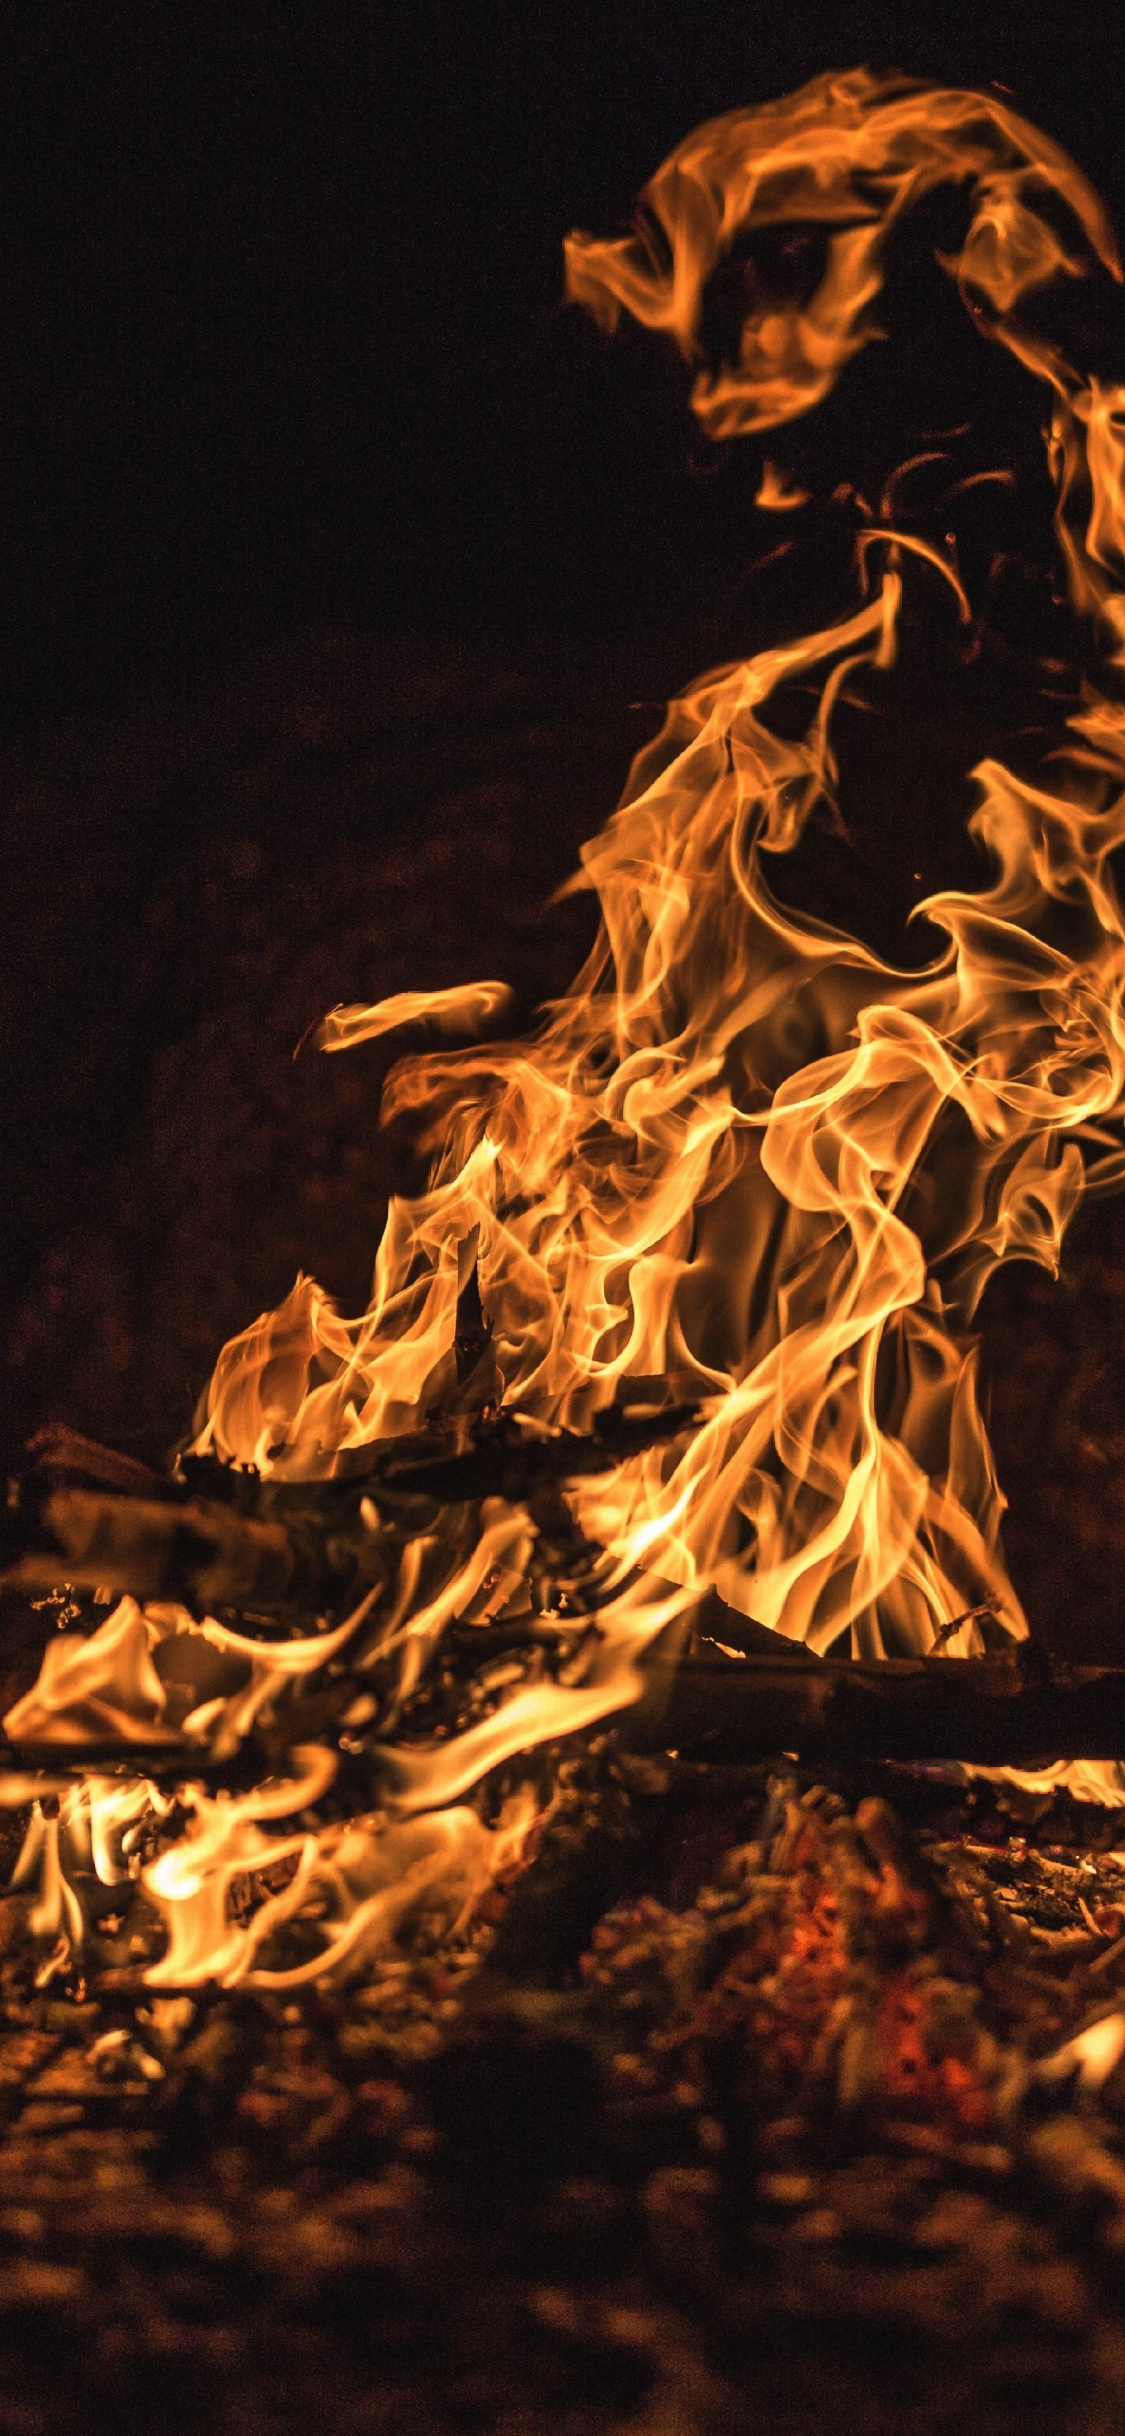 Firewood, Night Out, Dark, Fire, Wallpaper - Iphone Background Fire -  1125x2436 Wallpaper 